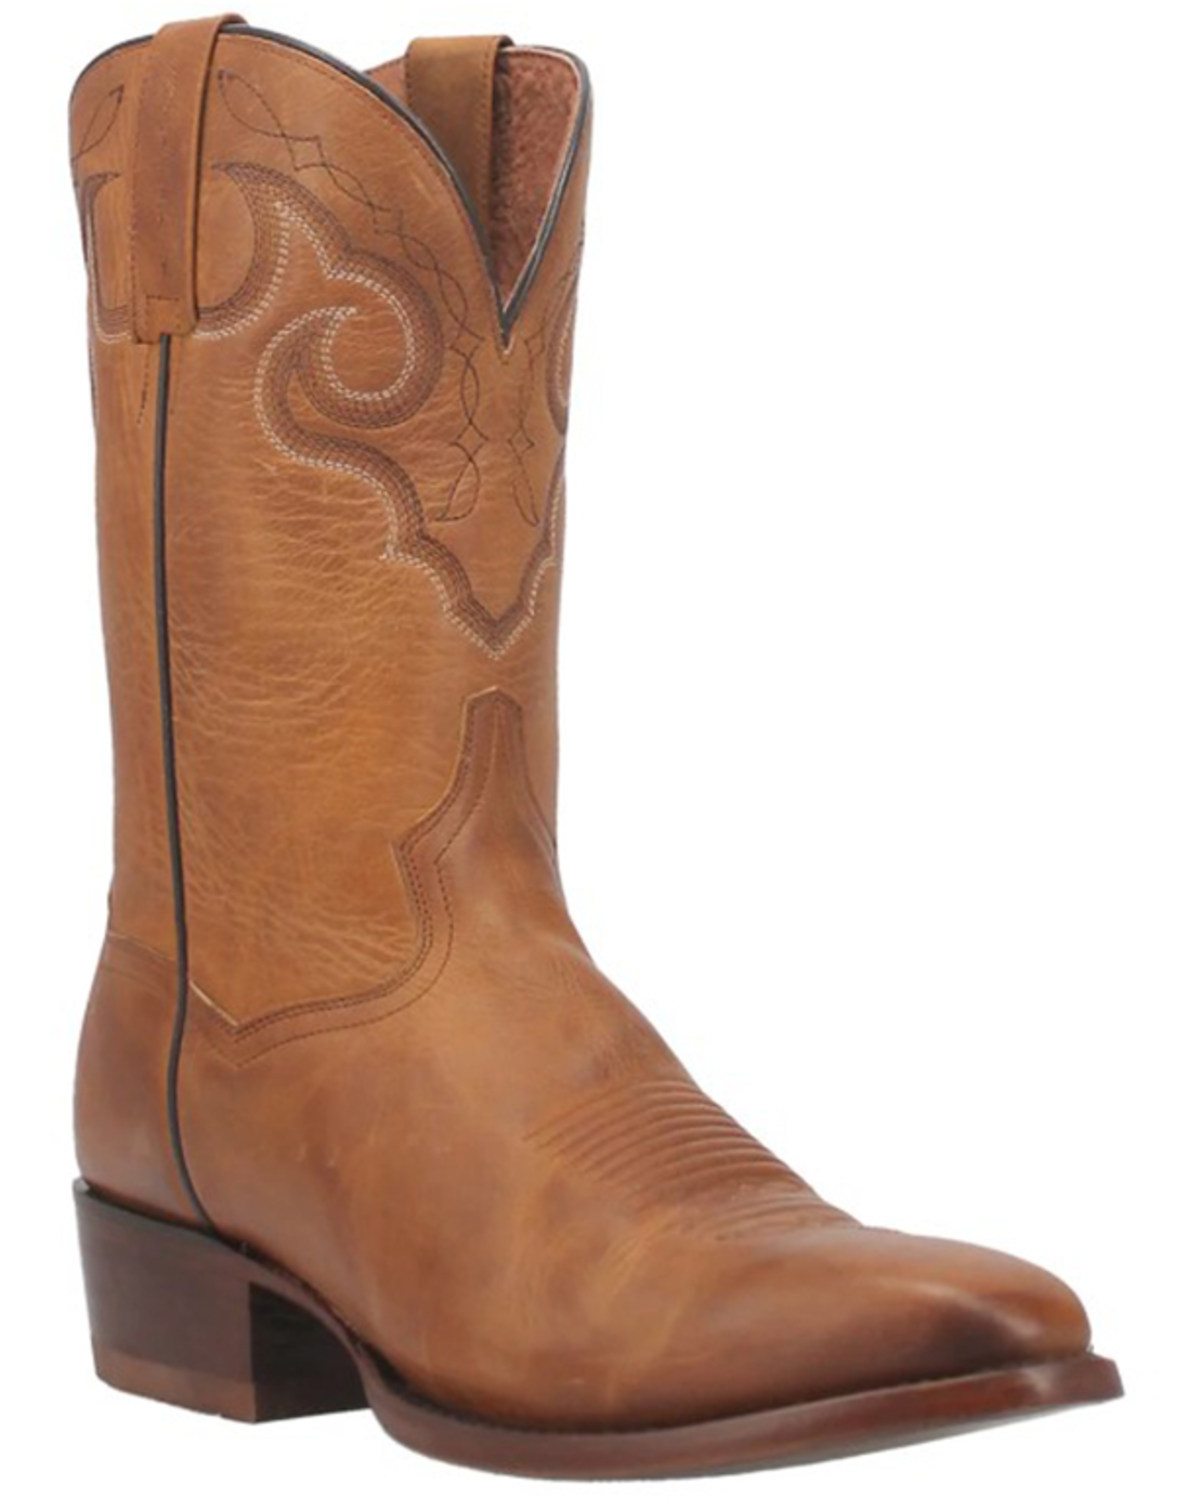 Dan Post Men's Simon Western Boots - Medium Toe